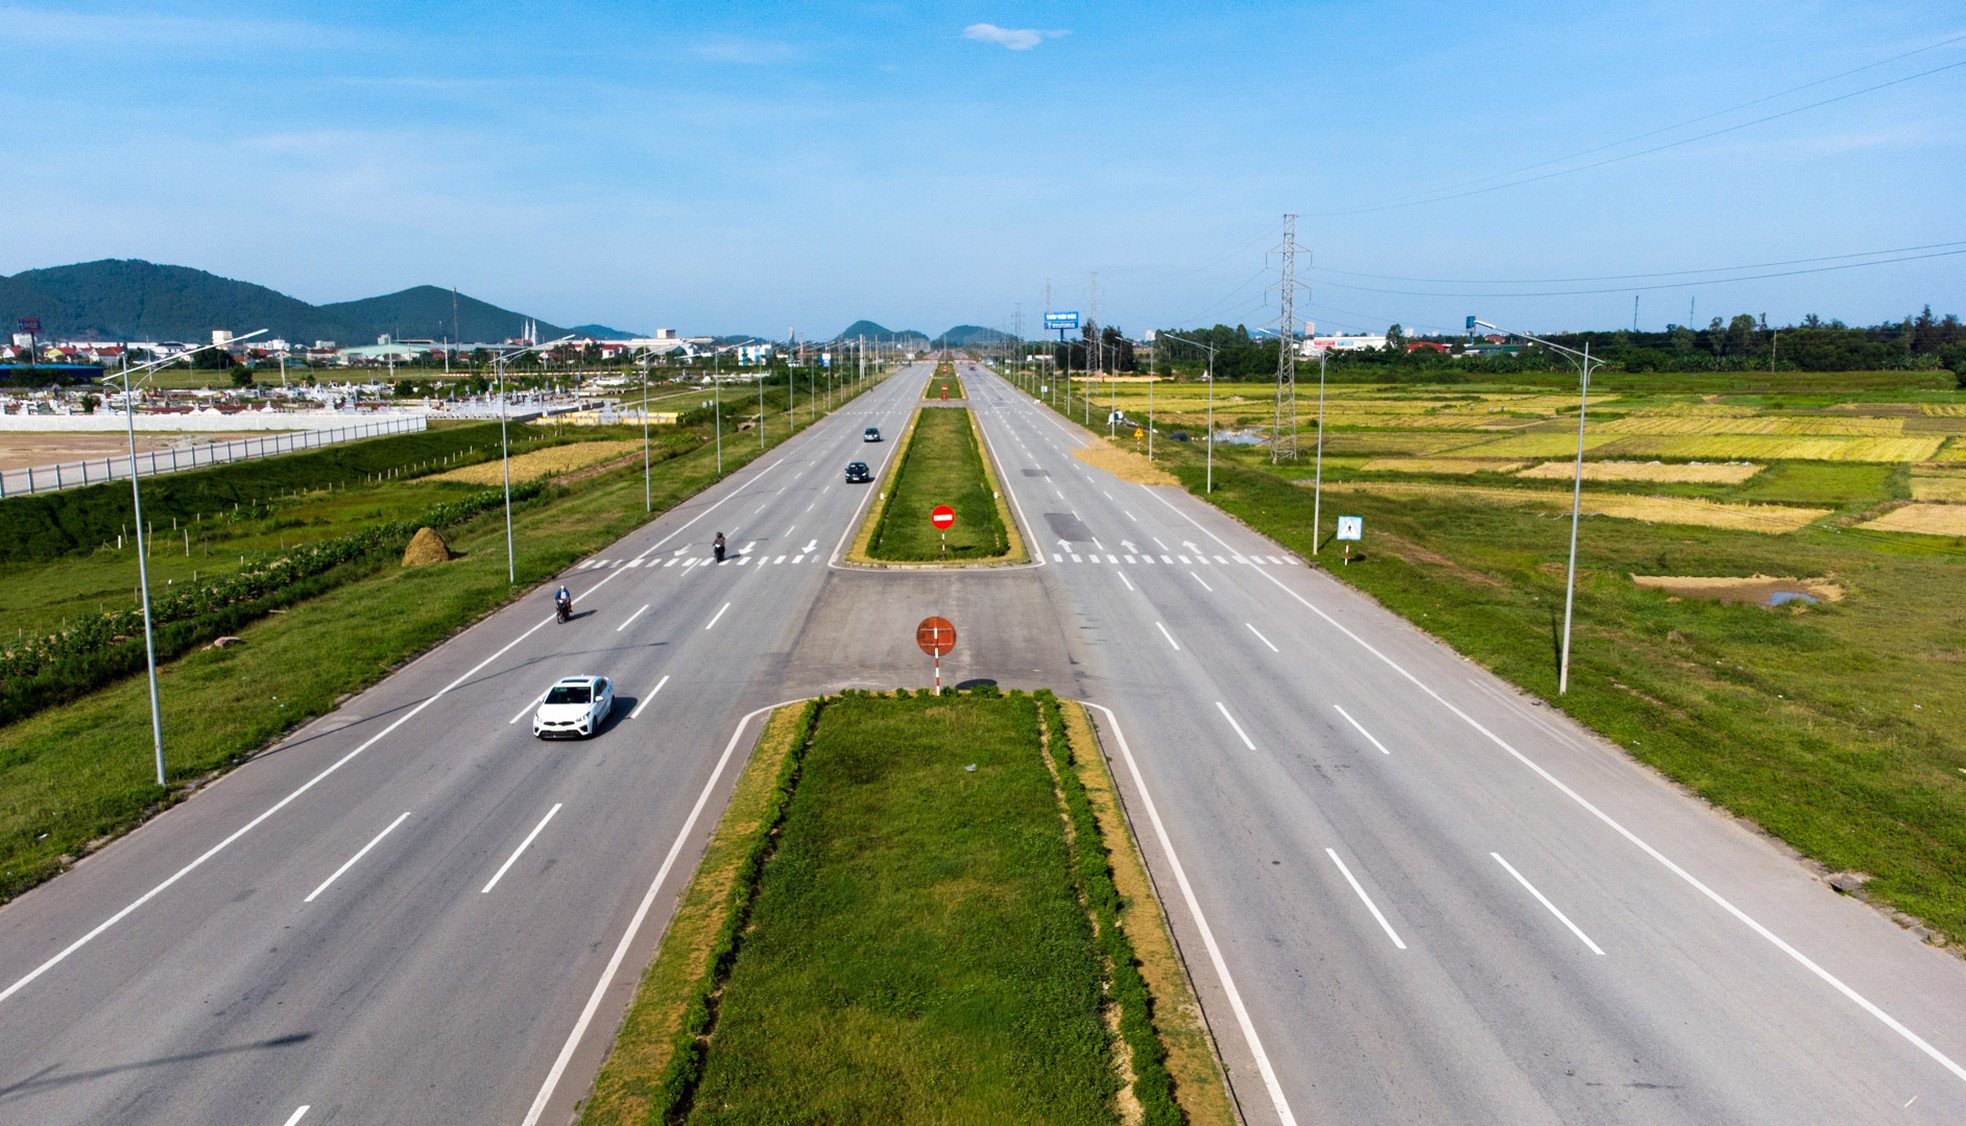 Hệ thống hạ tầng nối từ các Khu công nghiệp, khu kinh tế Đông Nam Nghệ An kéo xuống cảng biển được đầu tư đồng bộ